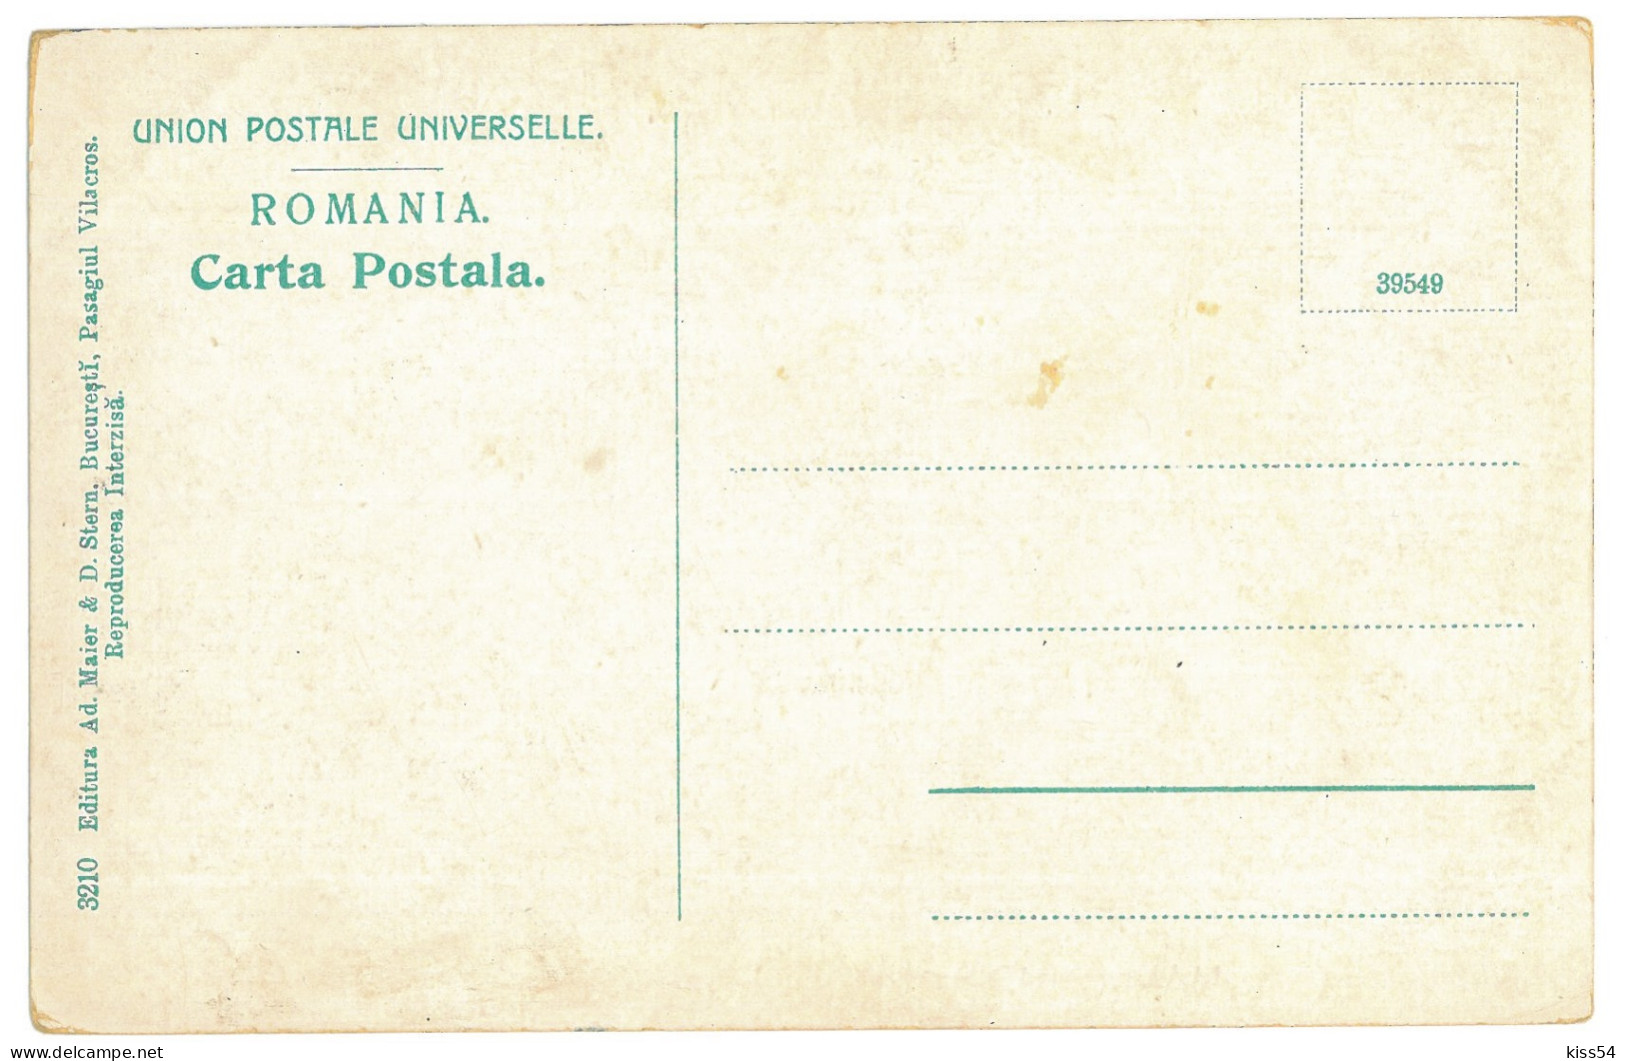 RO 09 - 25106 MORENI, Dambovita, Oil Wells, FIRE, Romania - Old Postcard - Unused - Roemenië